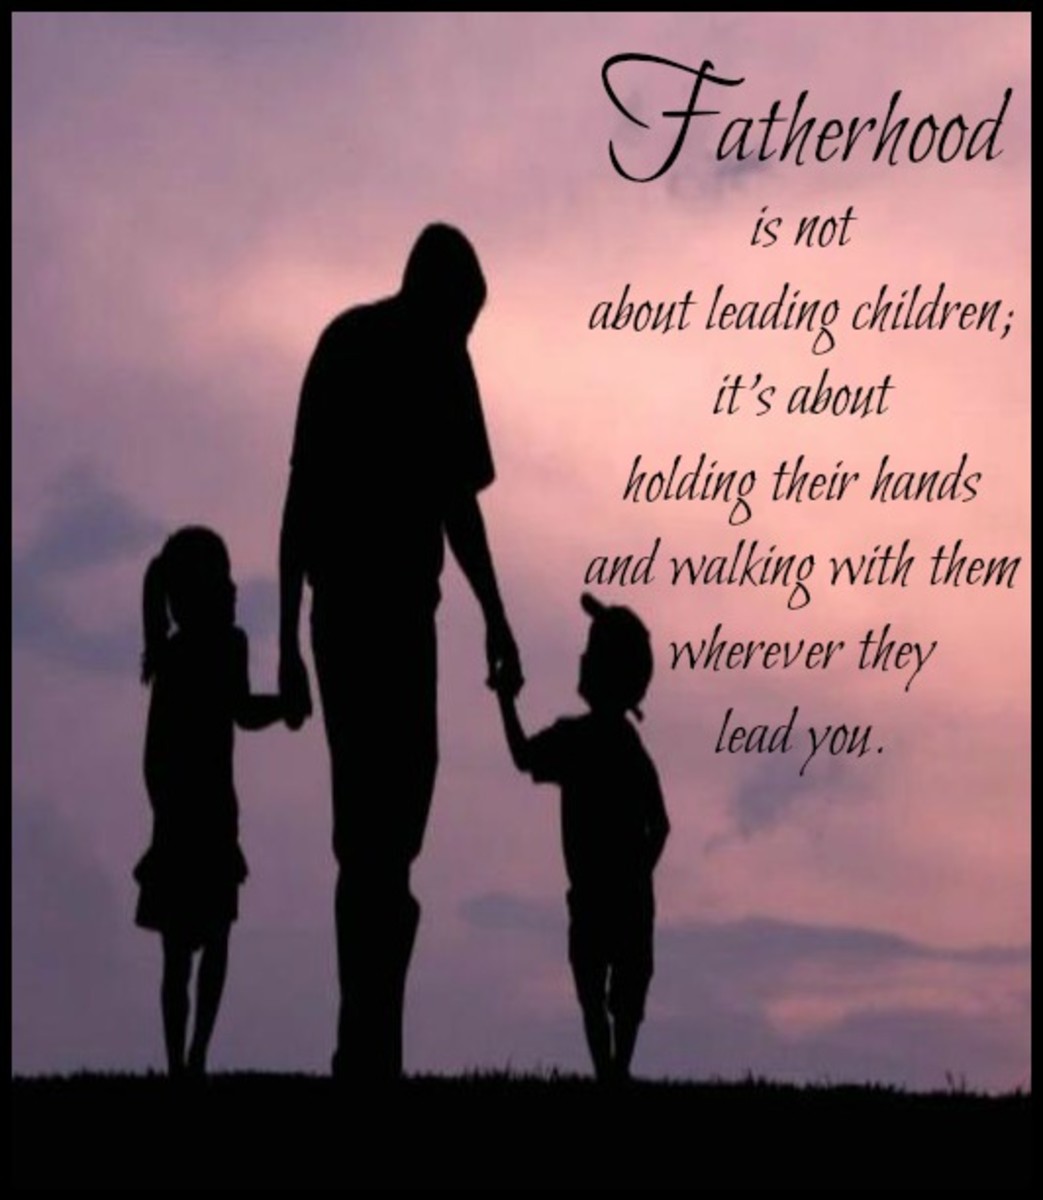 Message about Fatherhood